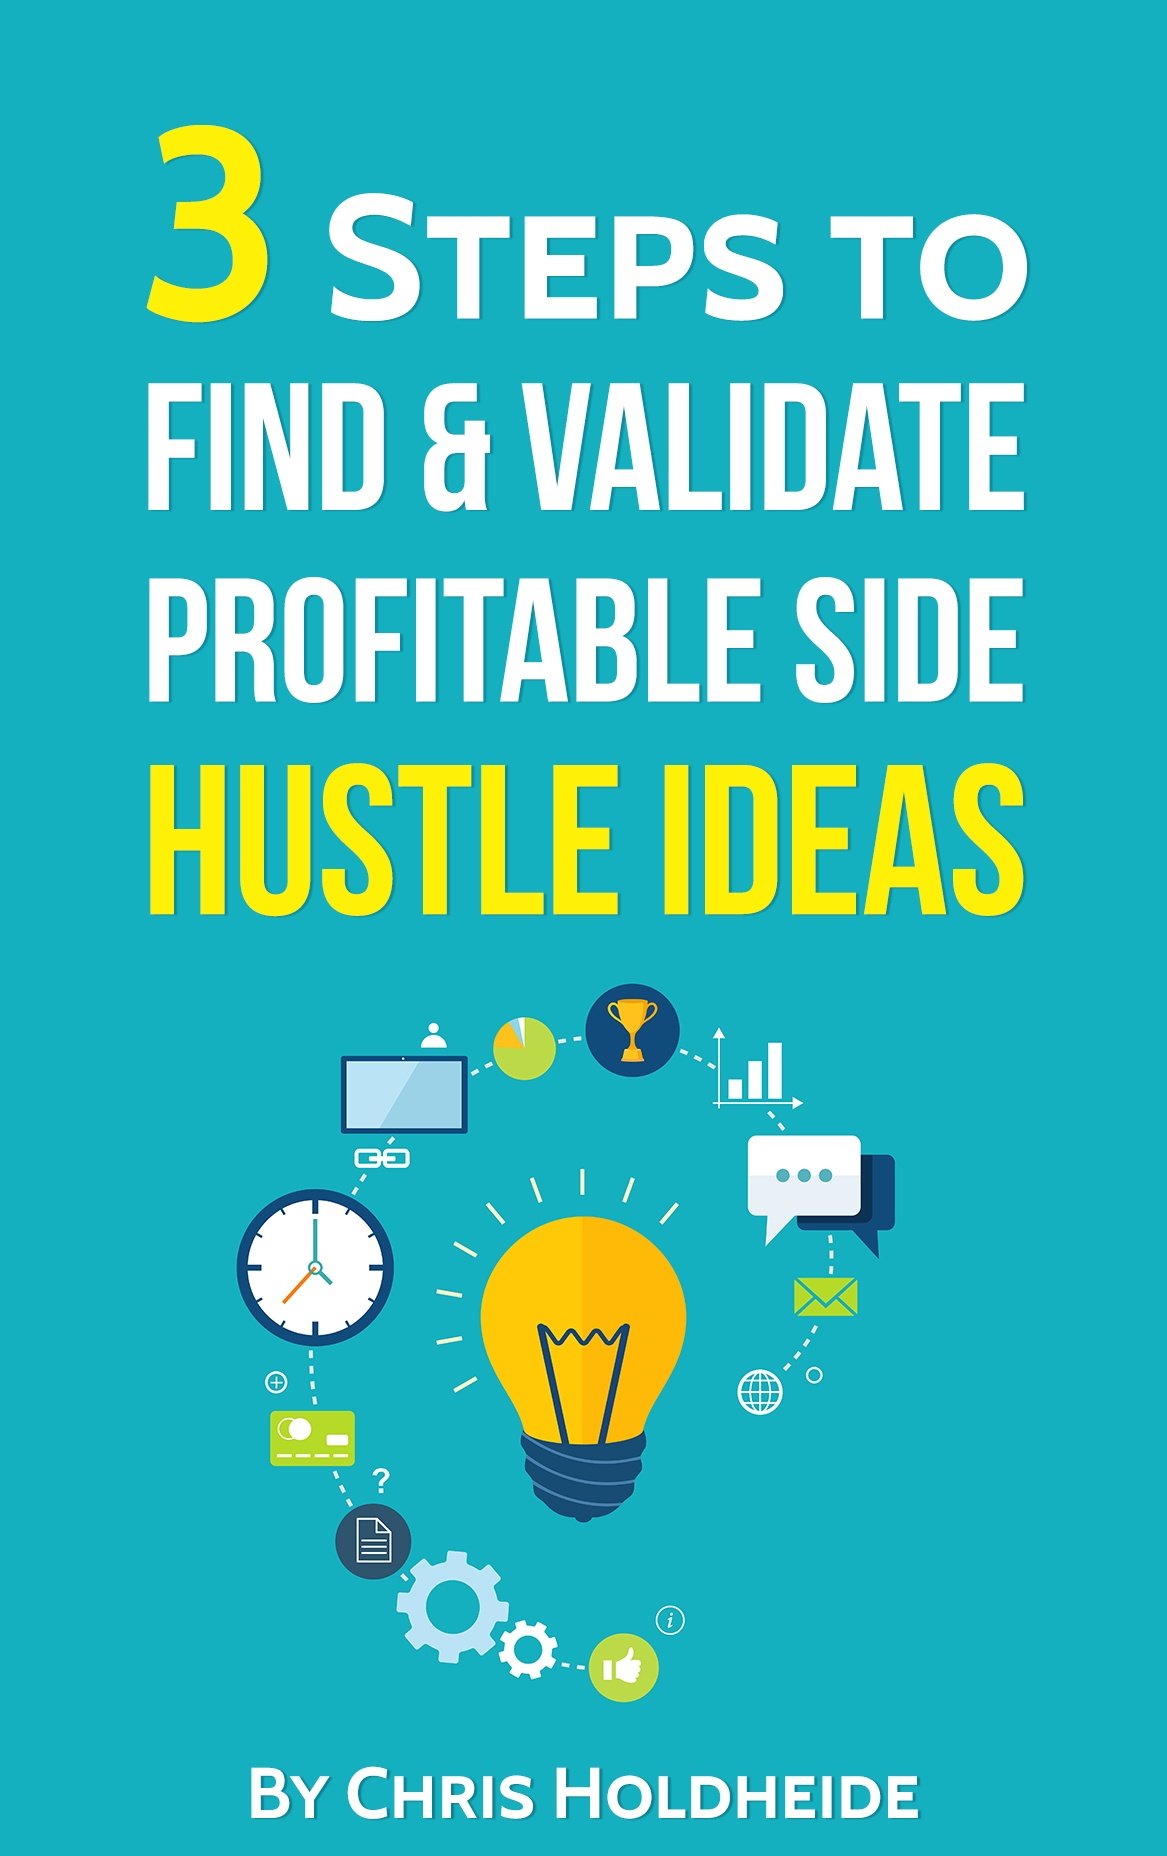 3 Steps to Find & Validate Profitable Side Hustle Ideas